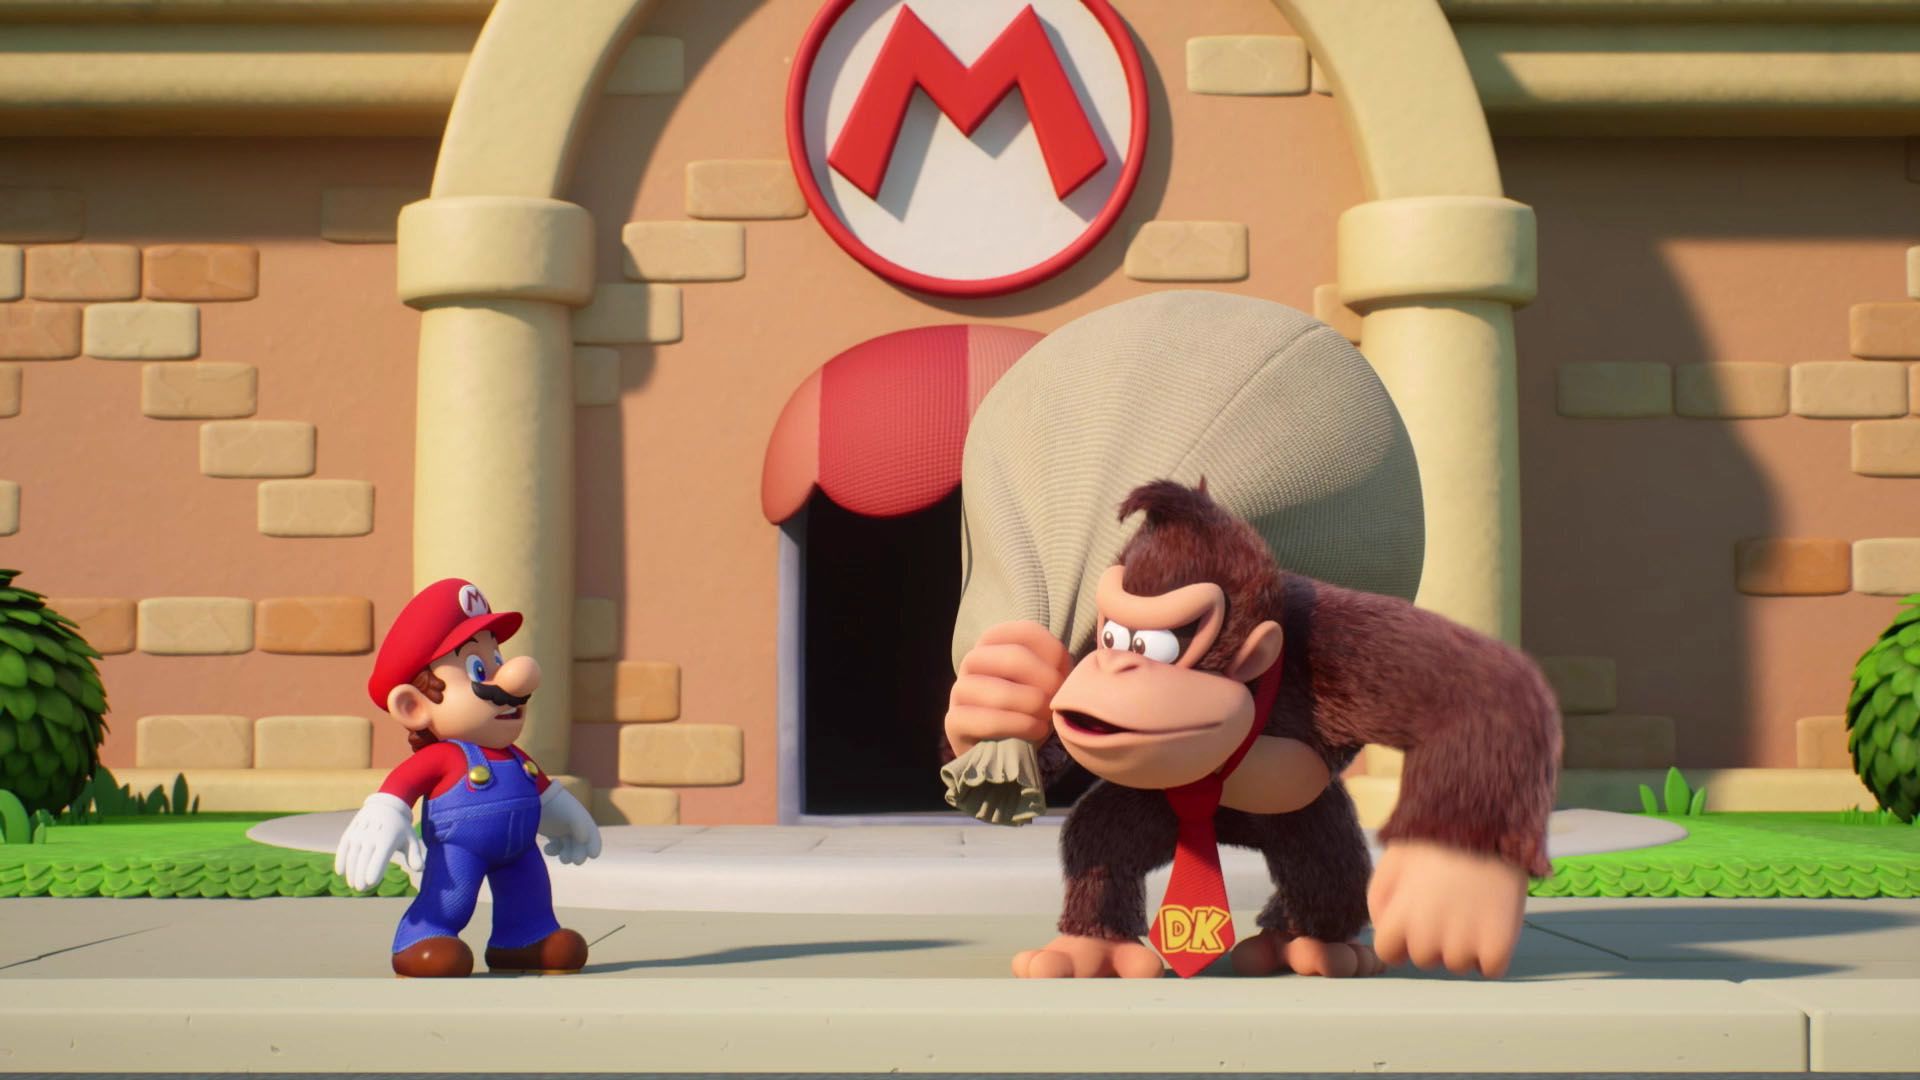 마리오는 궁금한 눈으로 동키 콩을 쳐다보고 있으며, 동키 콩은 어깨에 큰 가방을 메고 있는 동안 마리오의 로고가 있는 건물 앞에 서 있습니다. 사실 마리오 대 동키 콩은 마리오를 그냥 도둑질한 것처럼 보입니다. Mario vs. Donkey Kong에서의 화면 캡쳐입니다.